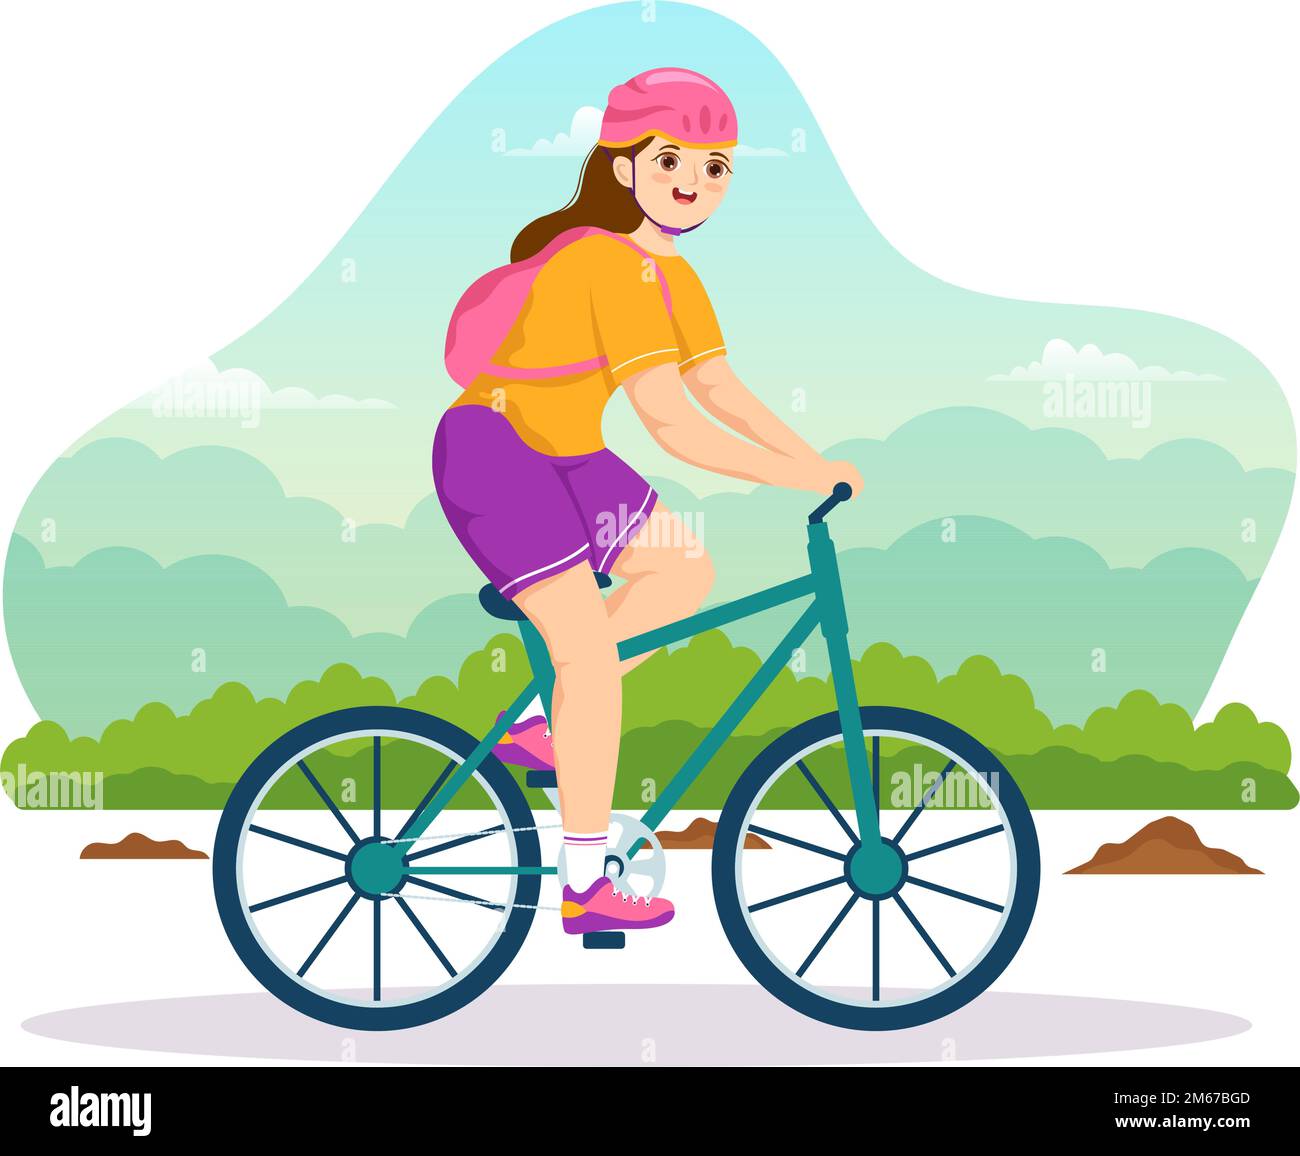 Mountain Biking Illustration mit Radfahren in den Bergen für Sport, Freizeit und gesunden Lebensstil in flachen, handgezeichneten Cartoon-Vorlagen Stock Vektor